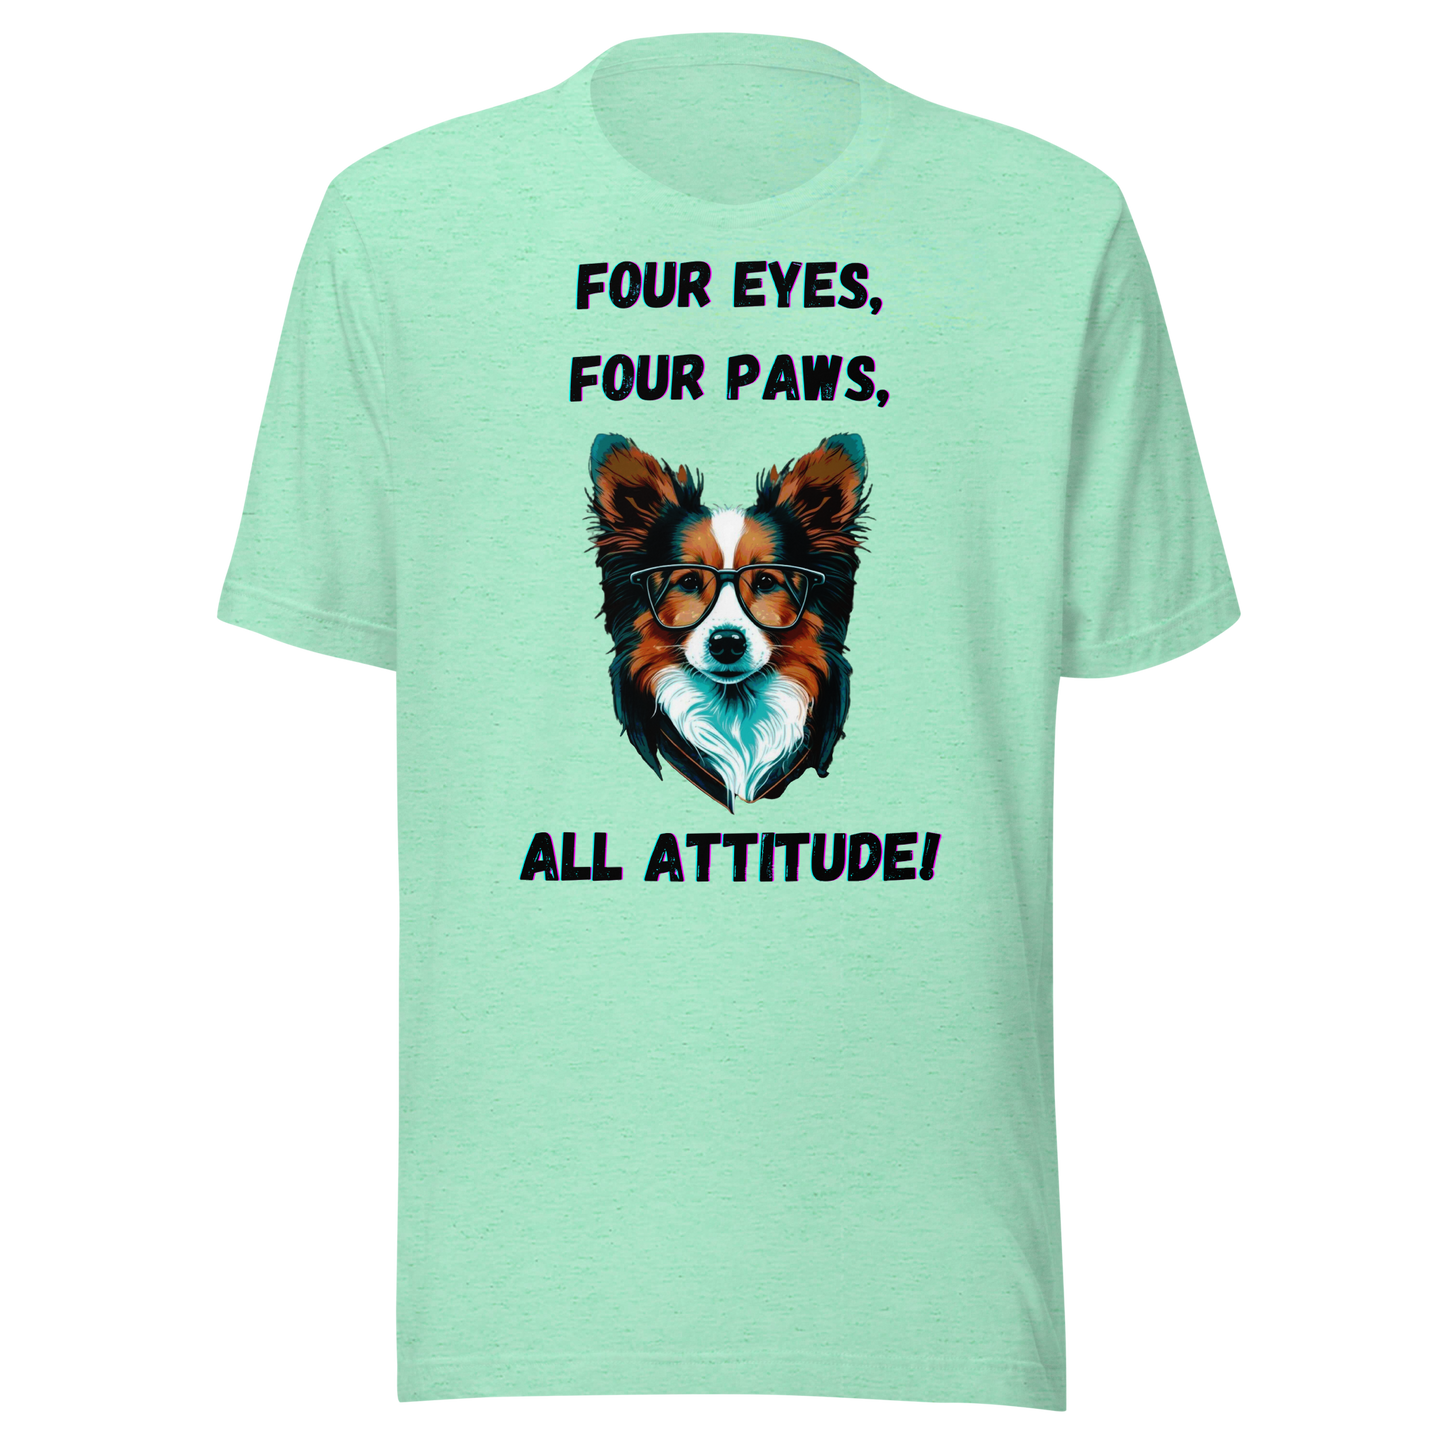 Unisex t-shirt. Print "Pawsitively Sassy: Four Eyes, Four Paws, All Attitude!"